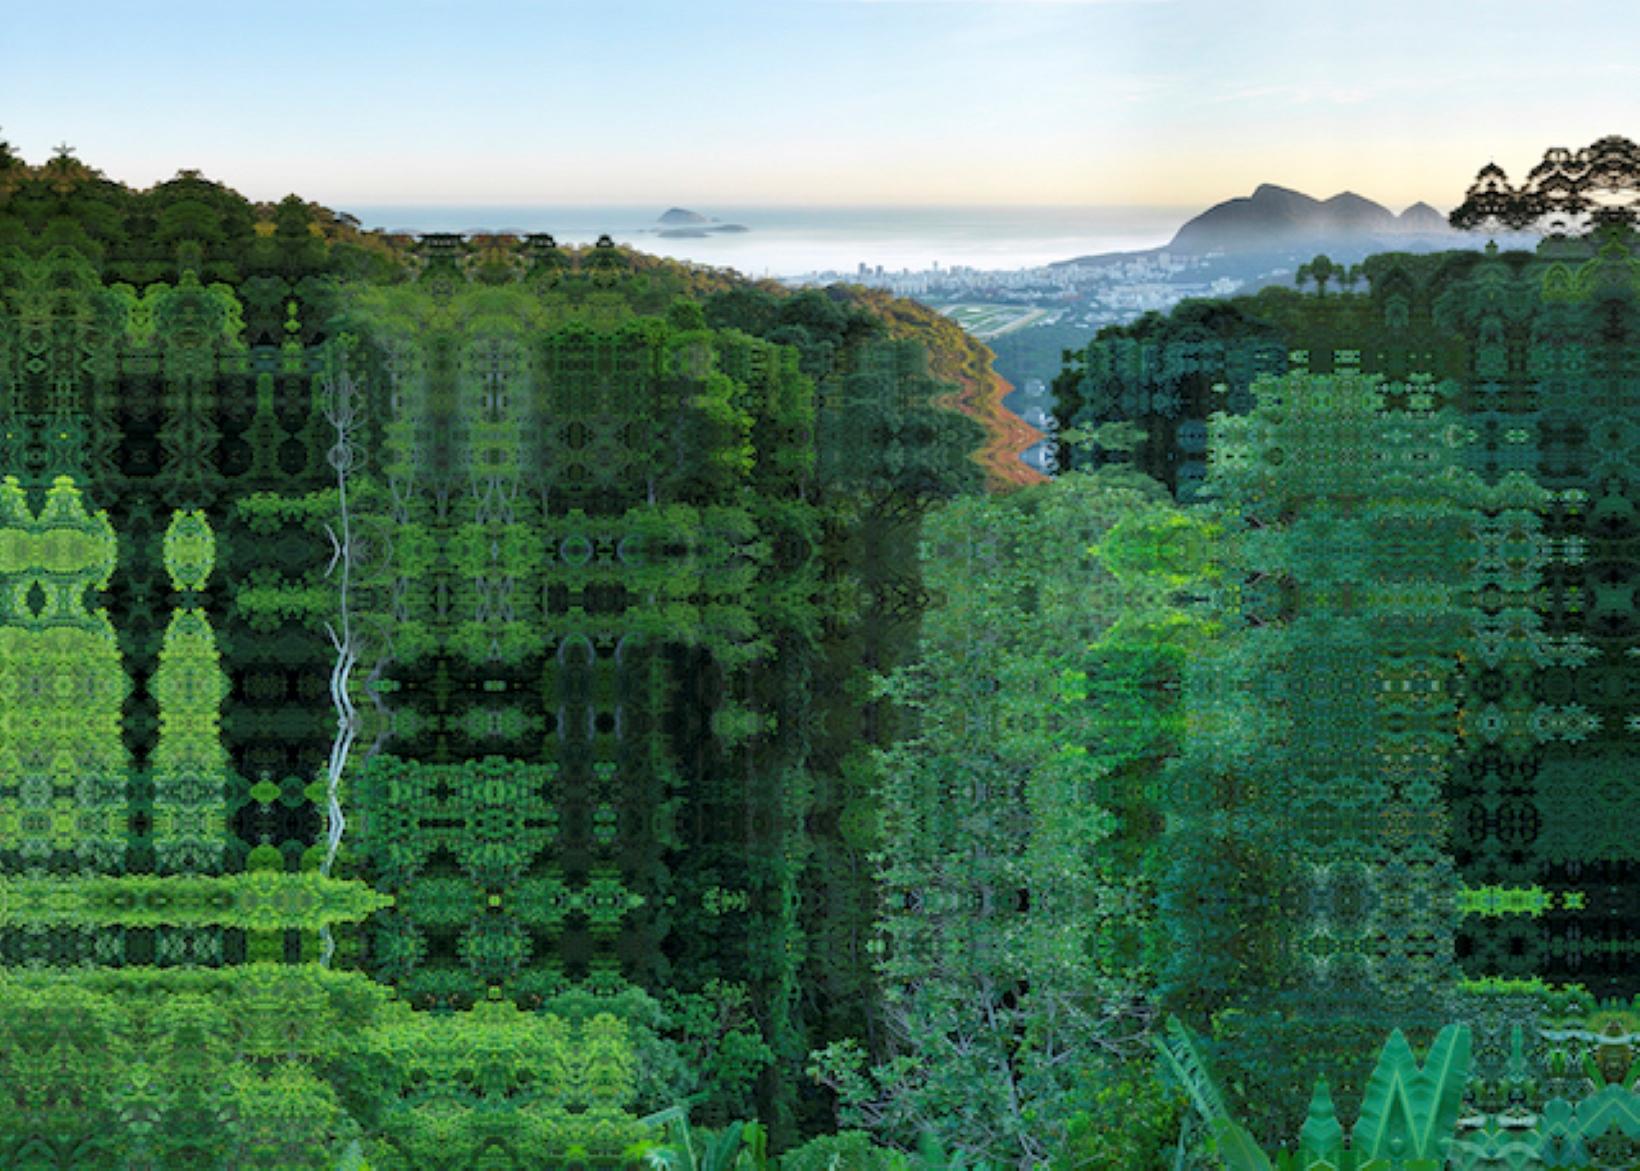 "Rio - Forêt de Tijuca", photographie d'un paysage brésilien par Didier Fournet. 

Didier Fournet est un "peintre" contemporain grâce à la photographie : il a choisi les pixels au lieu des pinceaux et révèle la beauté du monde en transformant les